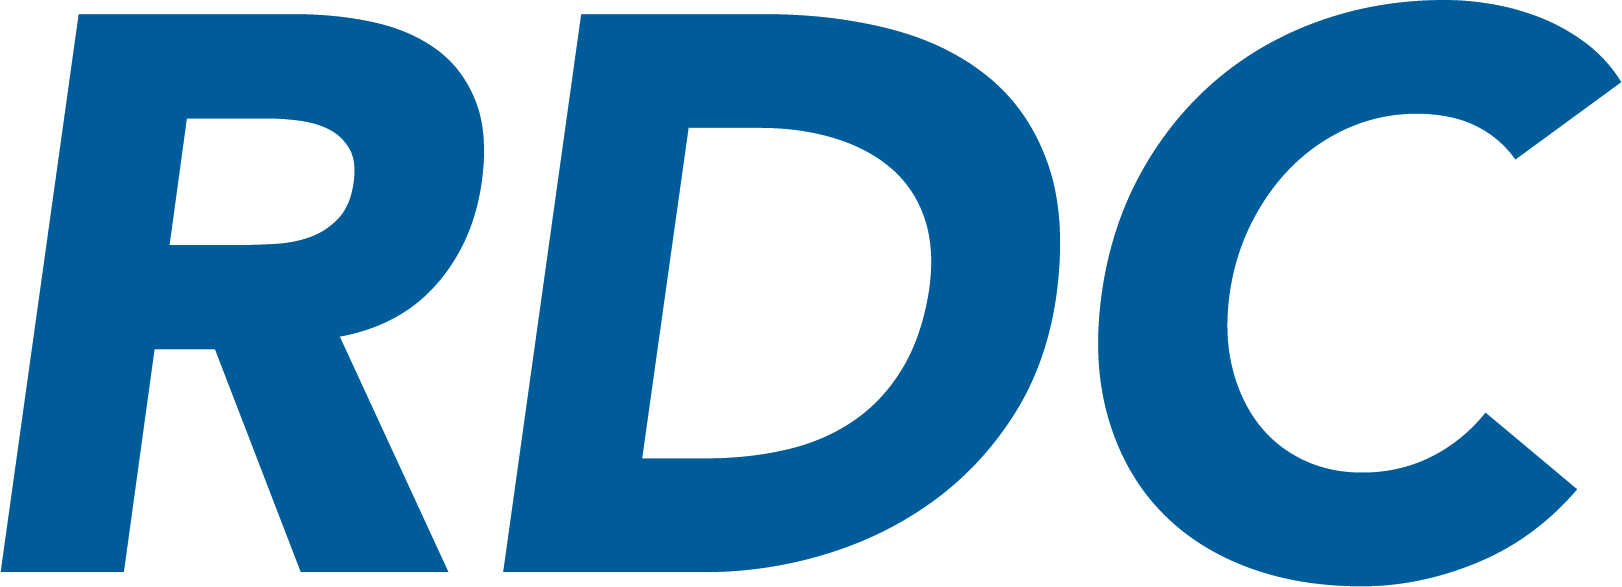 RDC_Logo